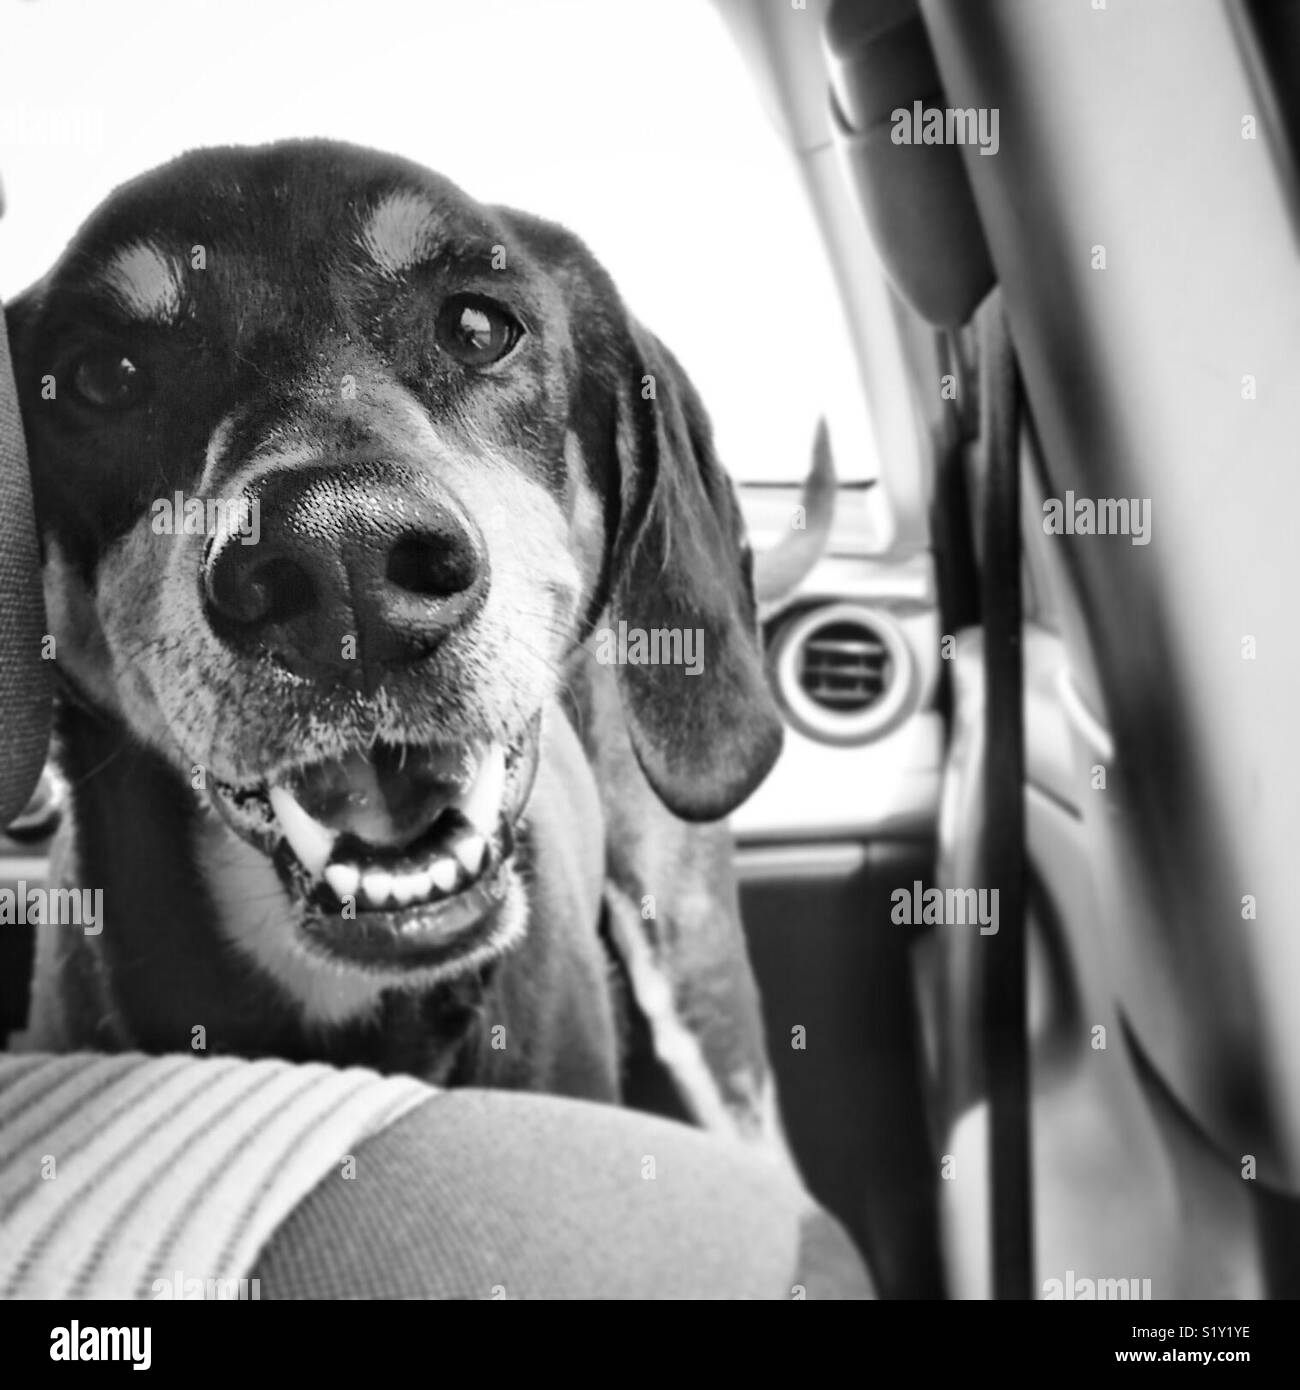 happy hound dog